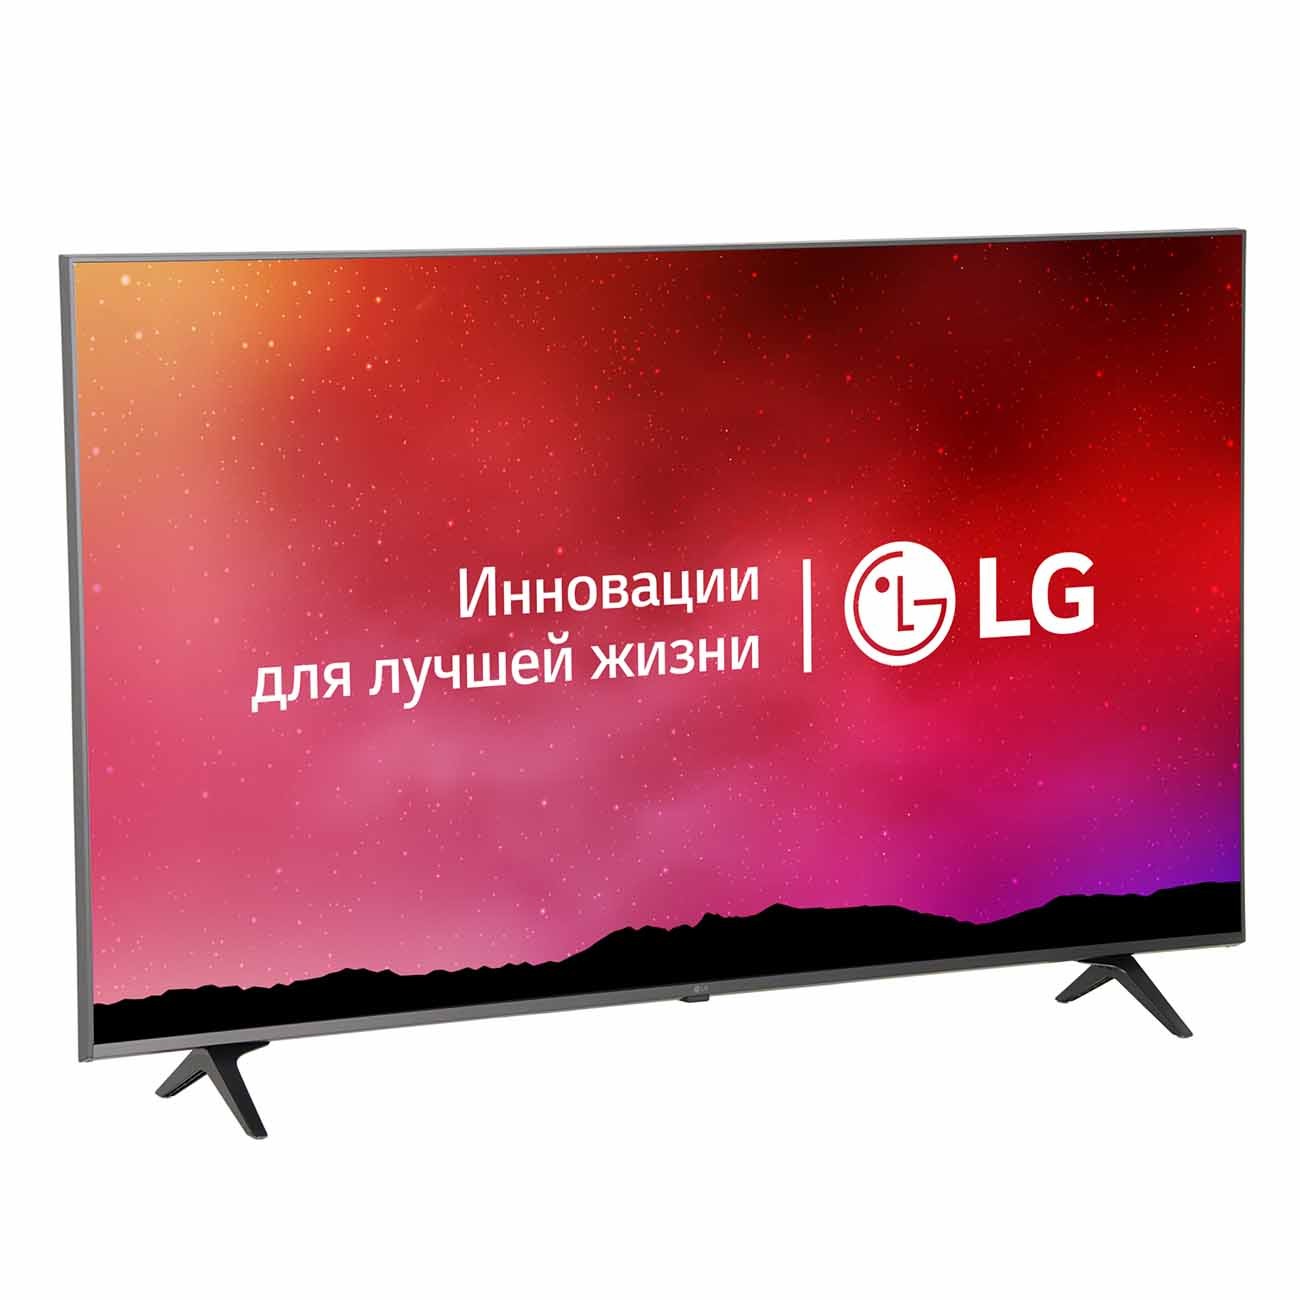 Телевизор LG 55UP77006LB LED, HDR (2021)